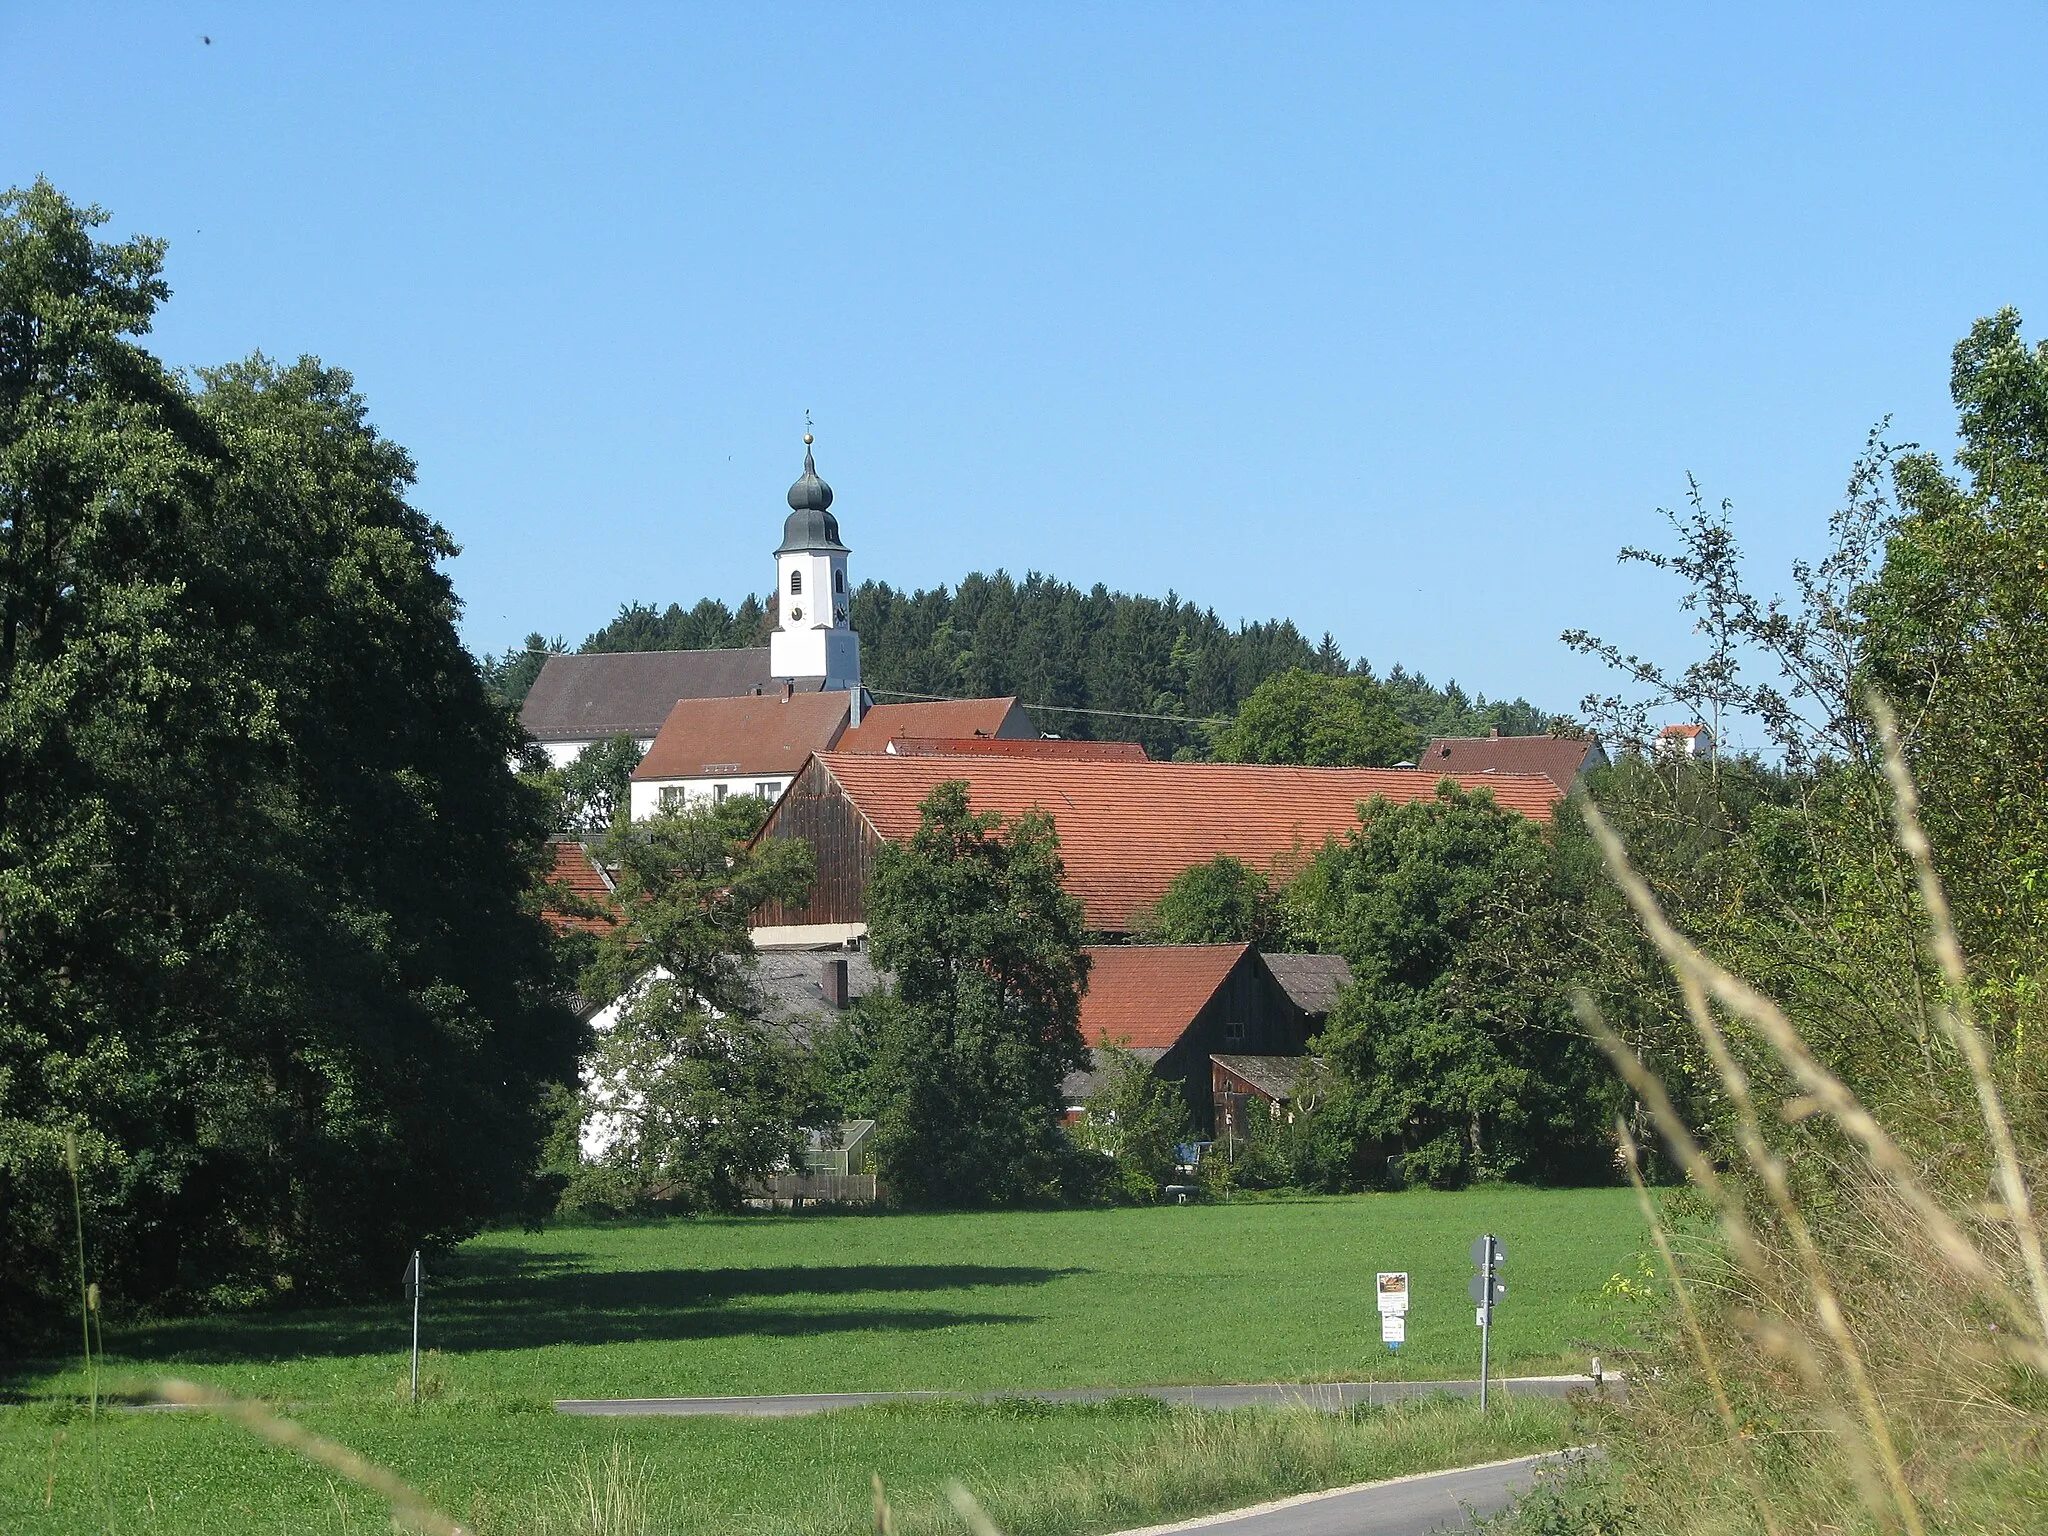 Photo showing: Darshofen, Ortsteil von Parsberg im Landkreis Neumarkt i. d. Opf.